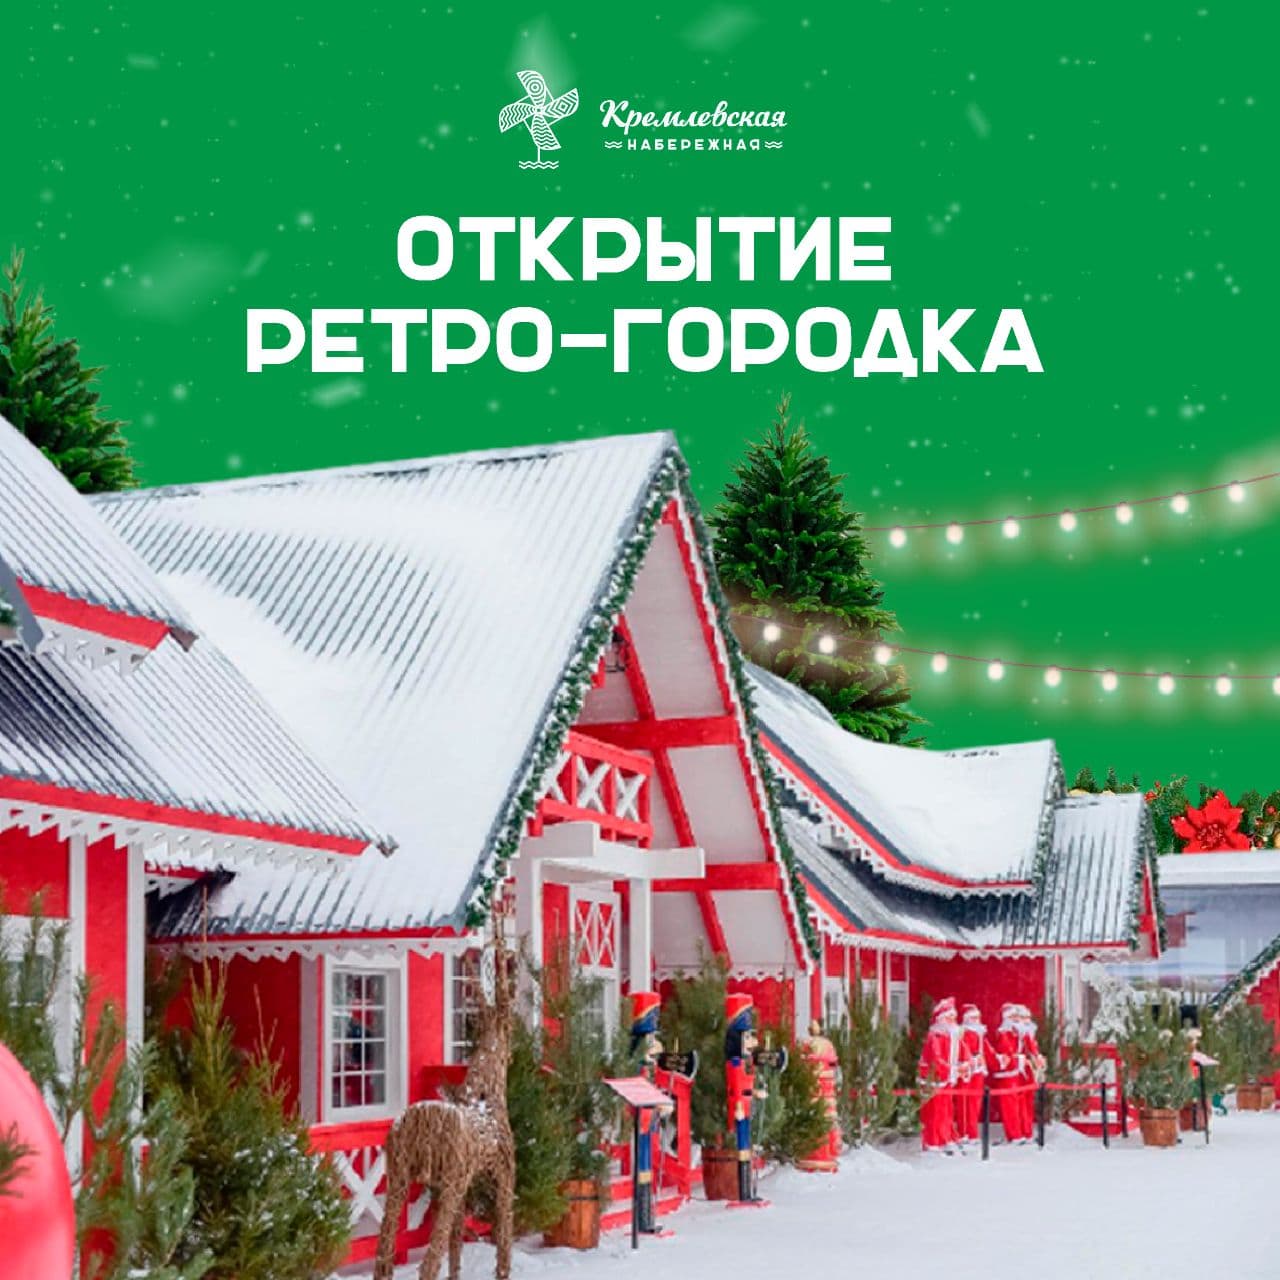 Красавица Казань вовсю готовится к празднованию Нового года!